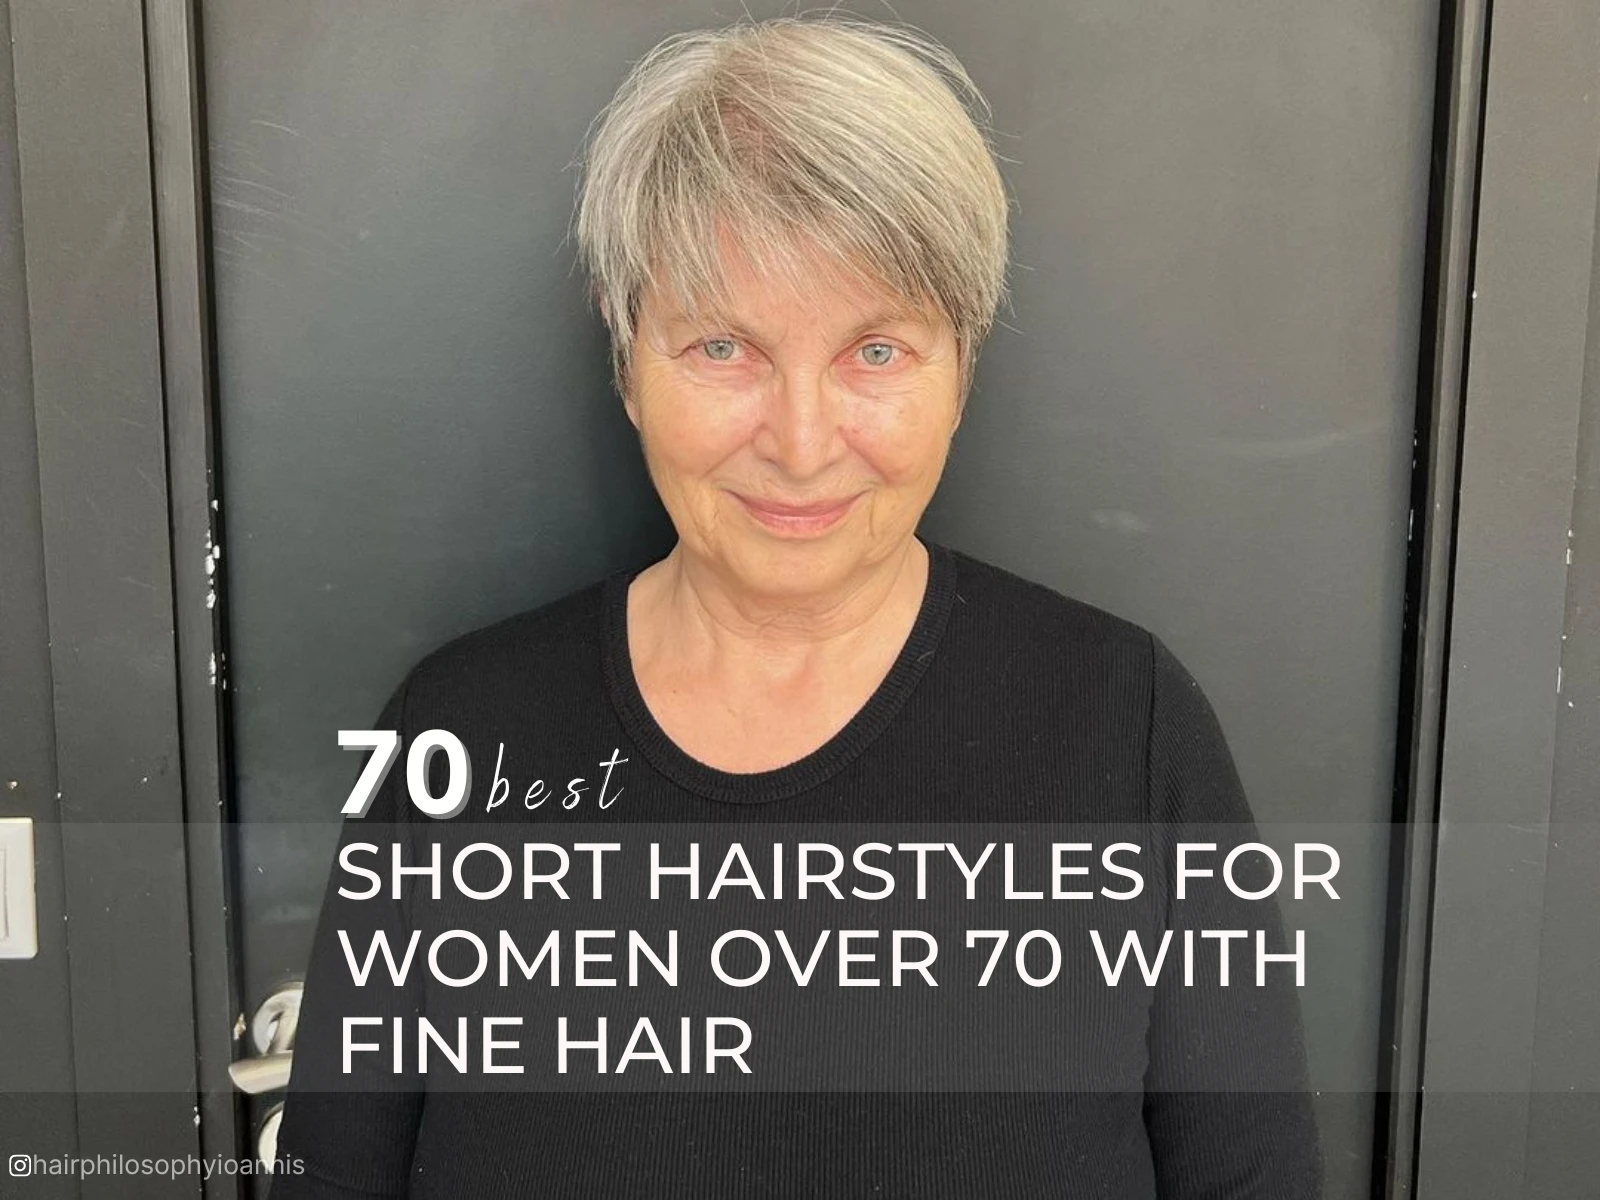 penteado curto para mulheres com mais de 70 anos com cabelo fino